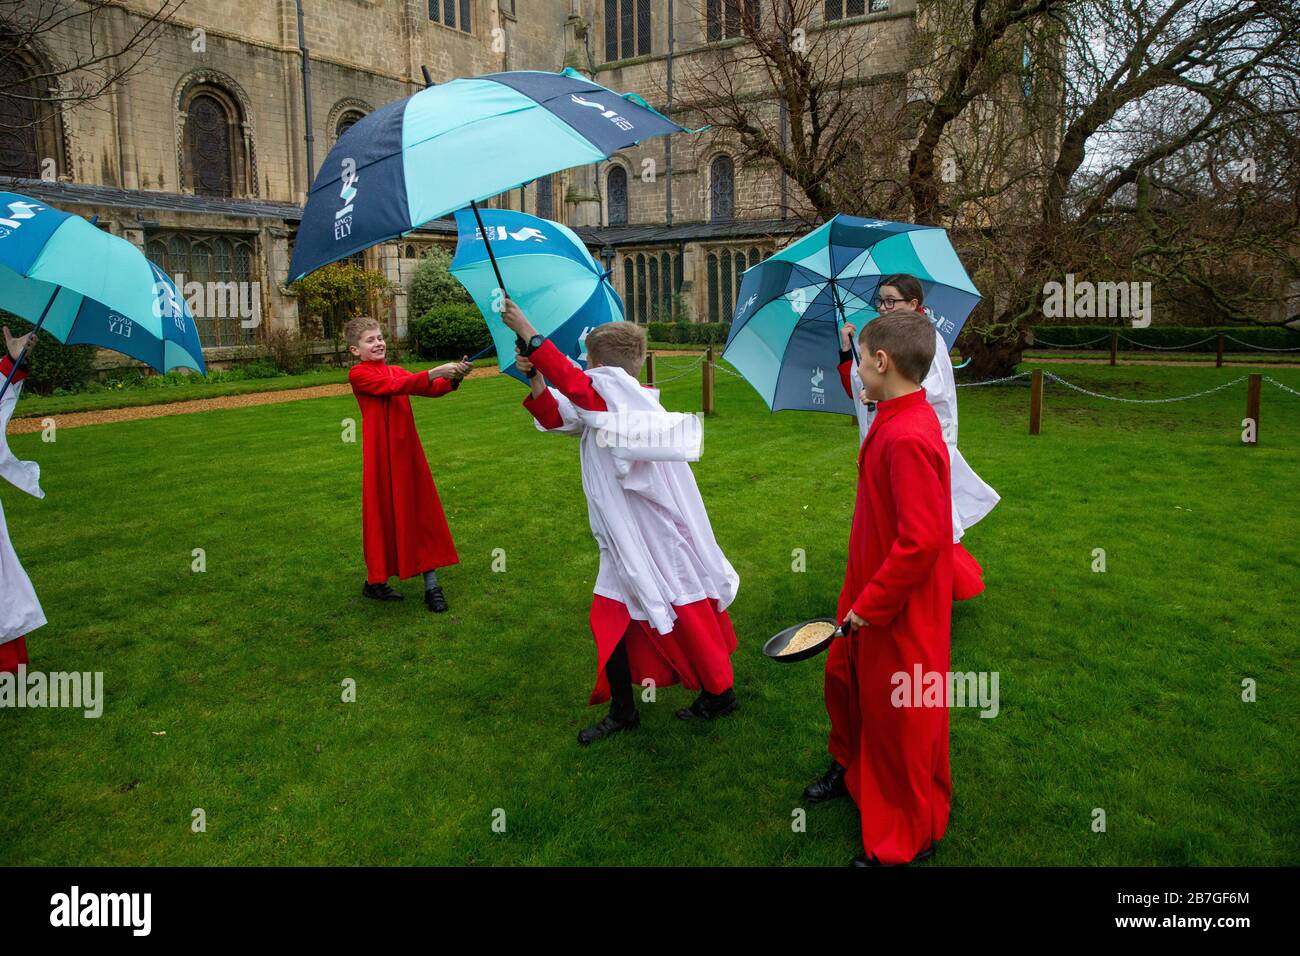 Das Bild vom 24. Februar zeigt den Chor der Ely-Kathedrale in Cambridgeshire, nachdem er am Dienstag im Regen für tomorrowÕs Pancake-Rennen geübt hat. Das regnerische Wetter didnÕt hält Chorherren in der Ely Cathedral in Cambridgeshire davon ab, heute Morgen (Mo) für ihr jährliches Pfannkuchenrennen zu üben. Die Jungen und Mädchen, die ihre roten und weißen Socken trugen, hielten Regenschirme, als sie Pfannkuchen vor der beeindruckenden Kathedrale aus dem 12. Jahrhundert umkippten. Die Jugendlichen lachten und kicherten, als sie für tomorrowÕs traditionelle Veranstaltung probten und bekamen trotzdem ihre Pfannkuchen, die ihre Fähigkeiten warfen, in den Griff Stockfoto